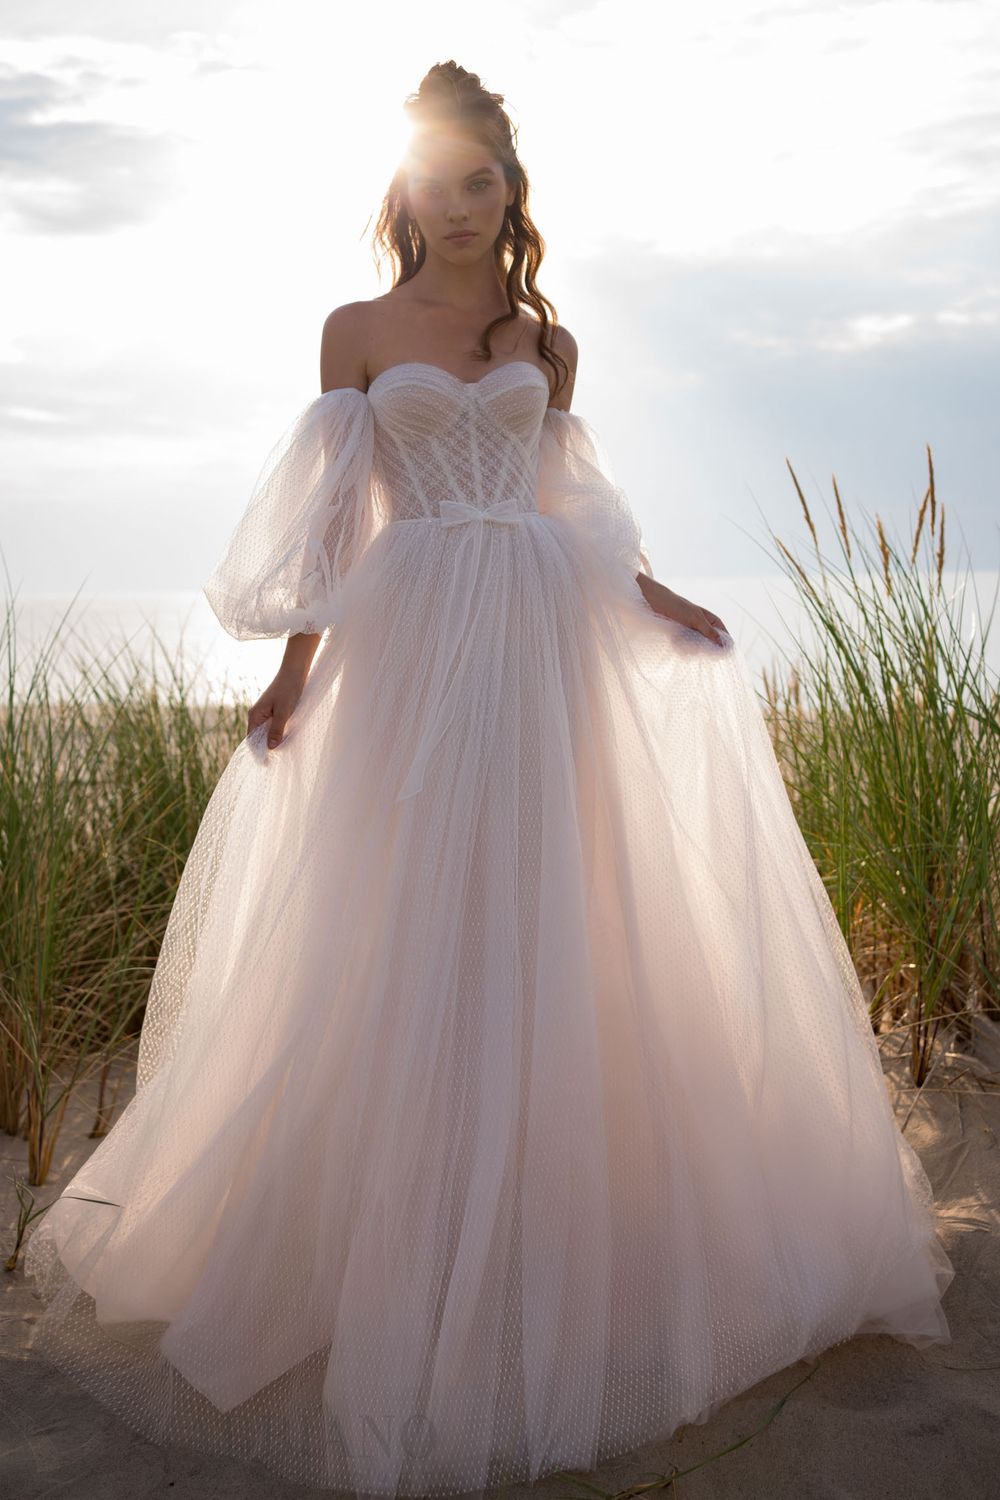 Свадебное платье Дилис